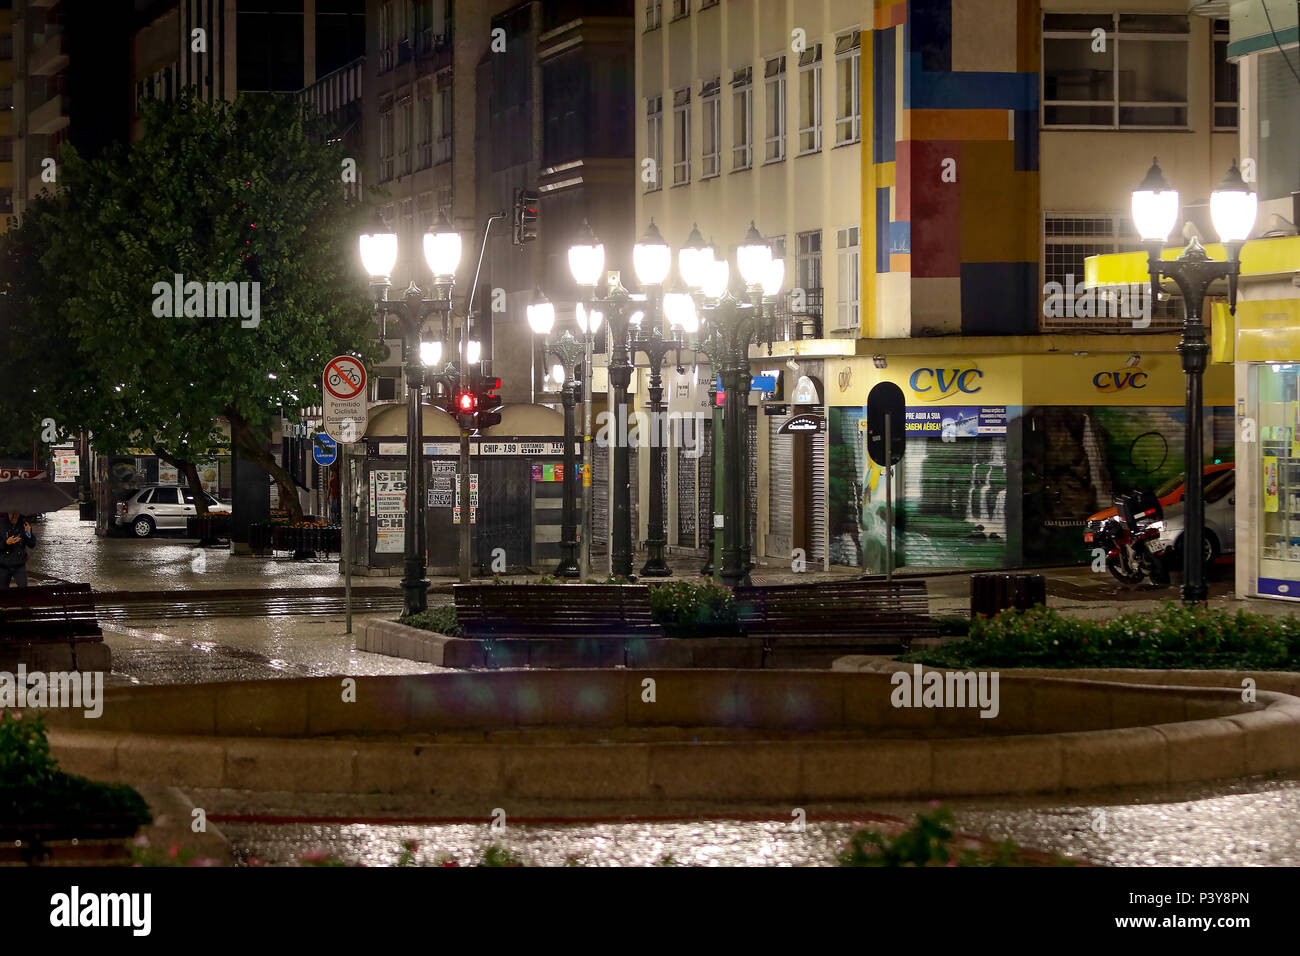 Calçadão de Rua XV de Novembro, nessun centro de Curitiba, bastante movimentado duranti o dia e vazio à noite. Foto Stock